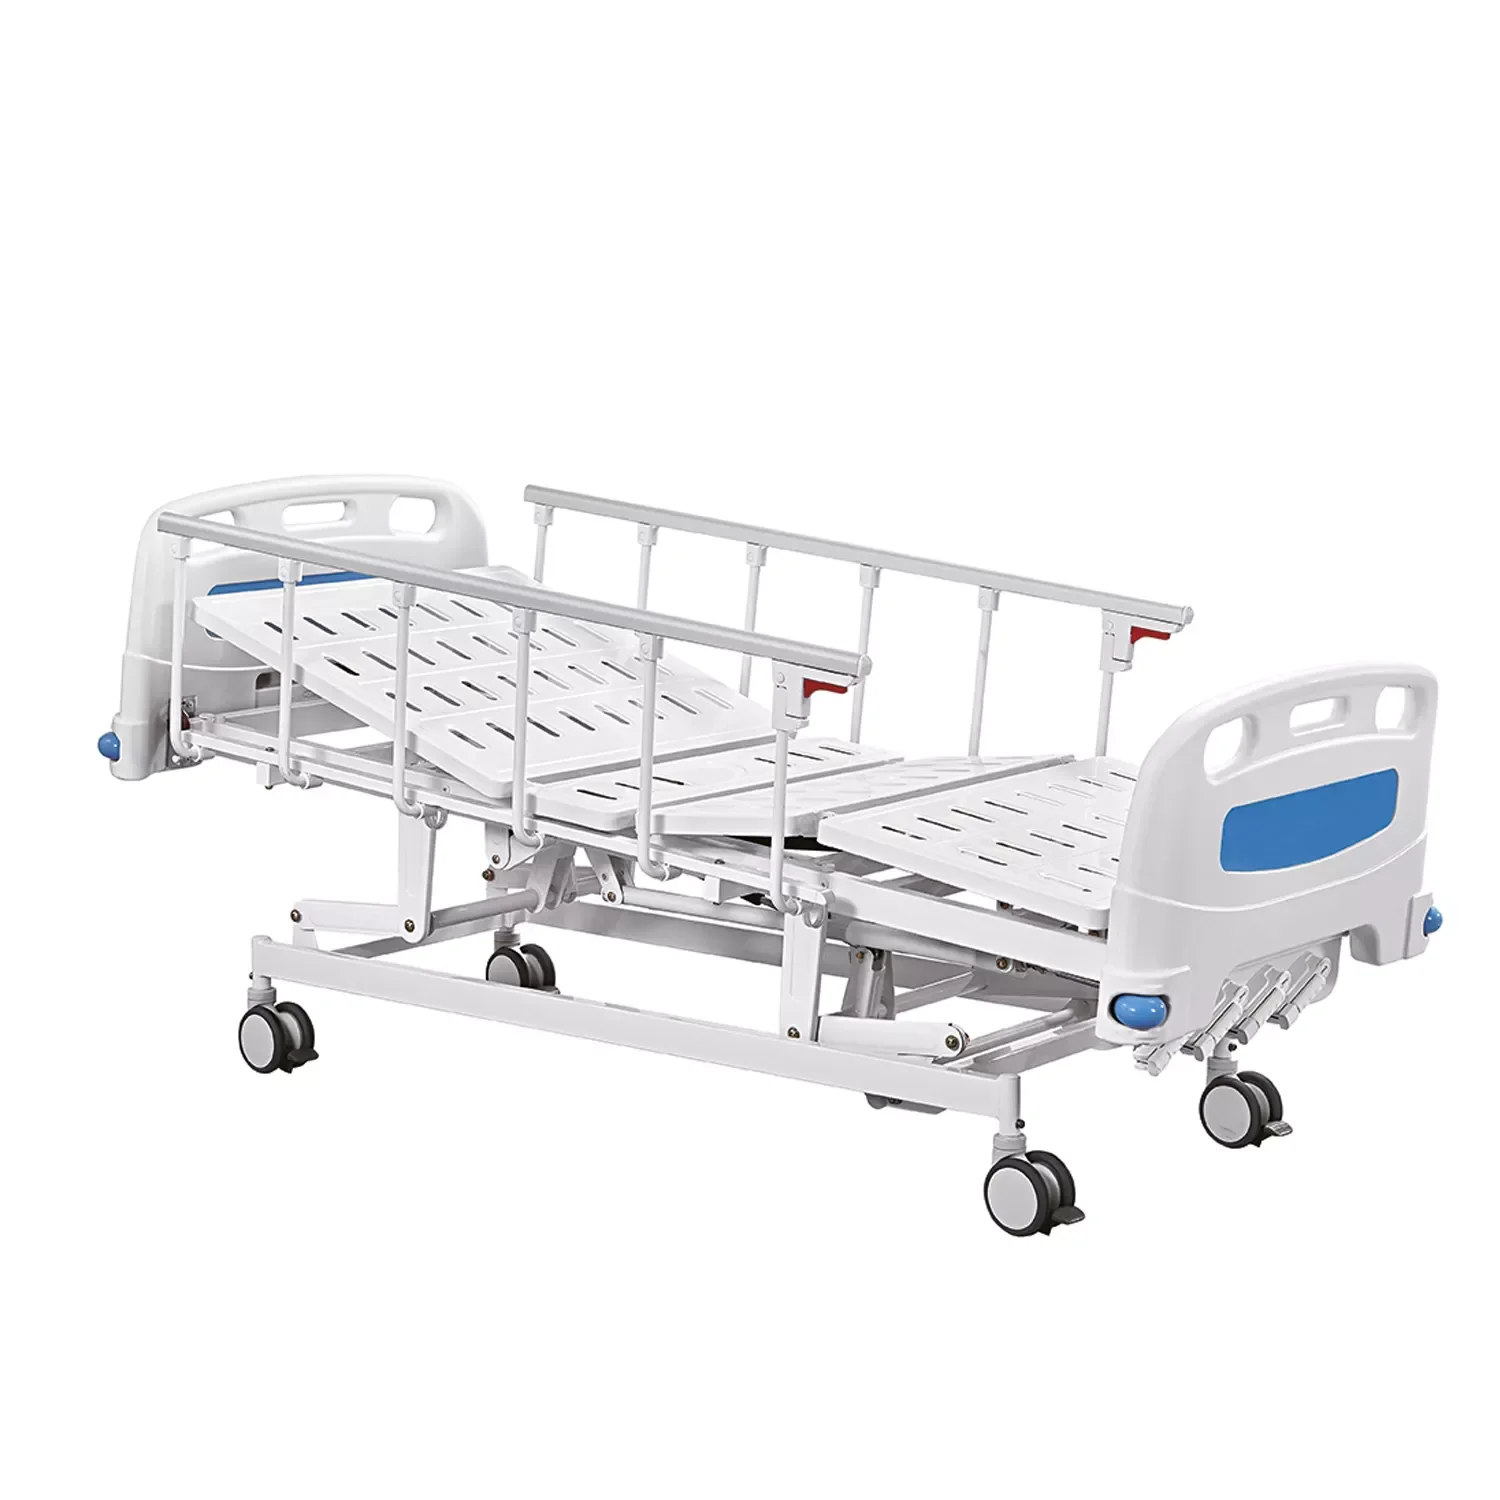 Paramount Bed медицинские кровати